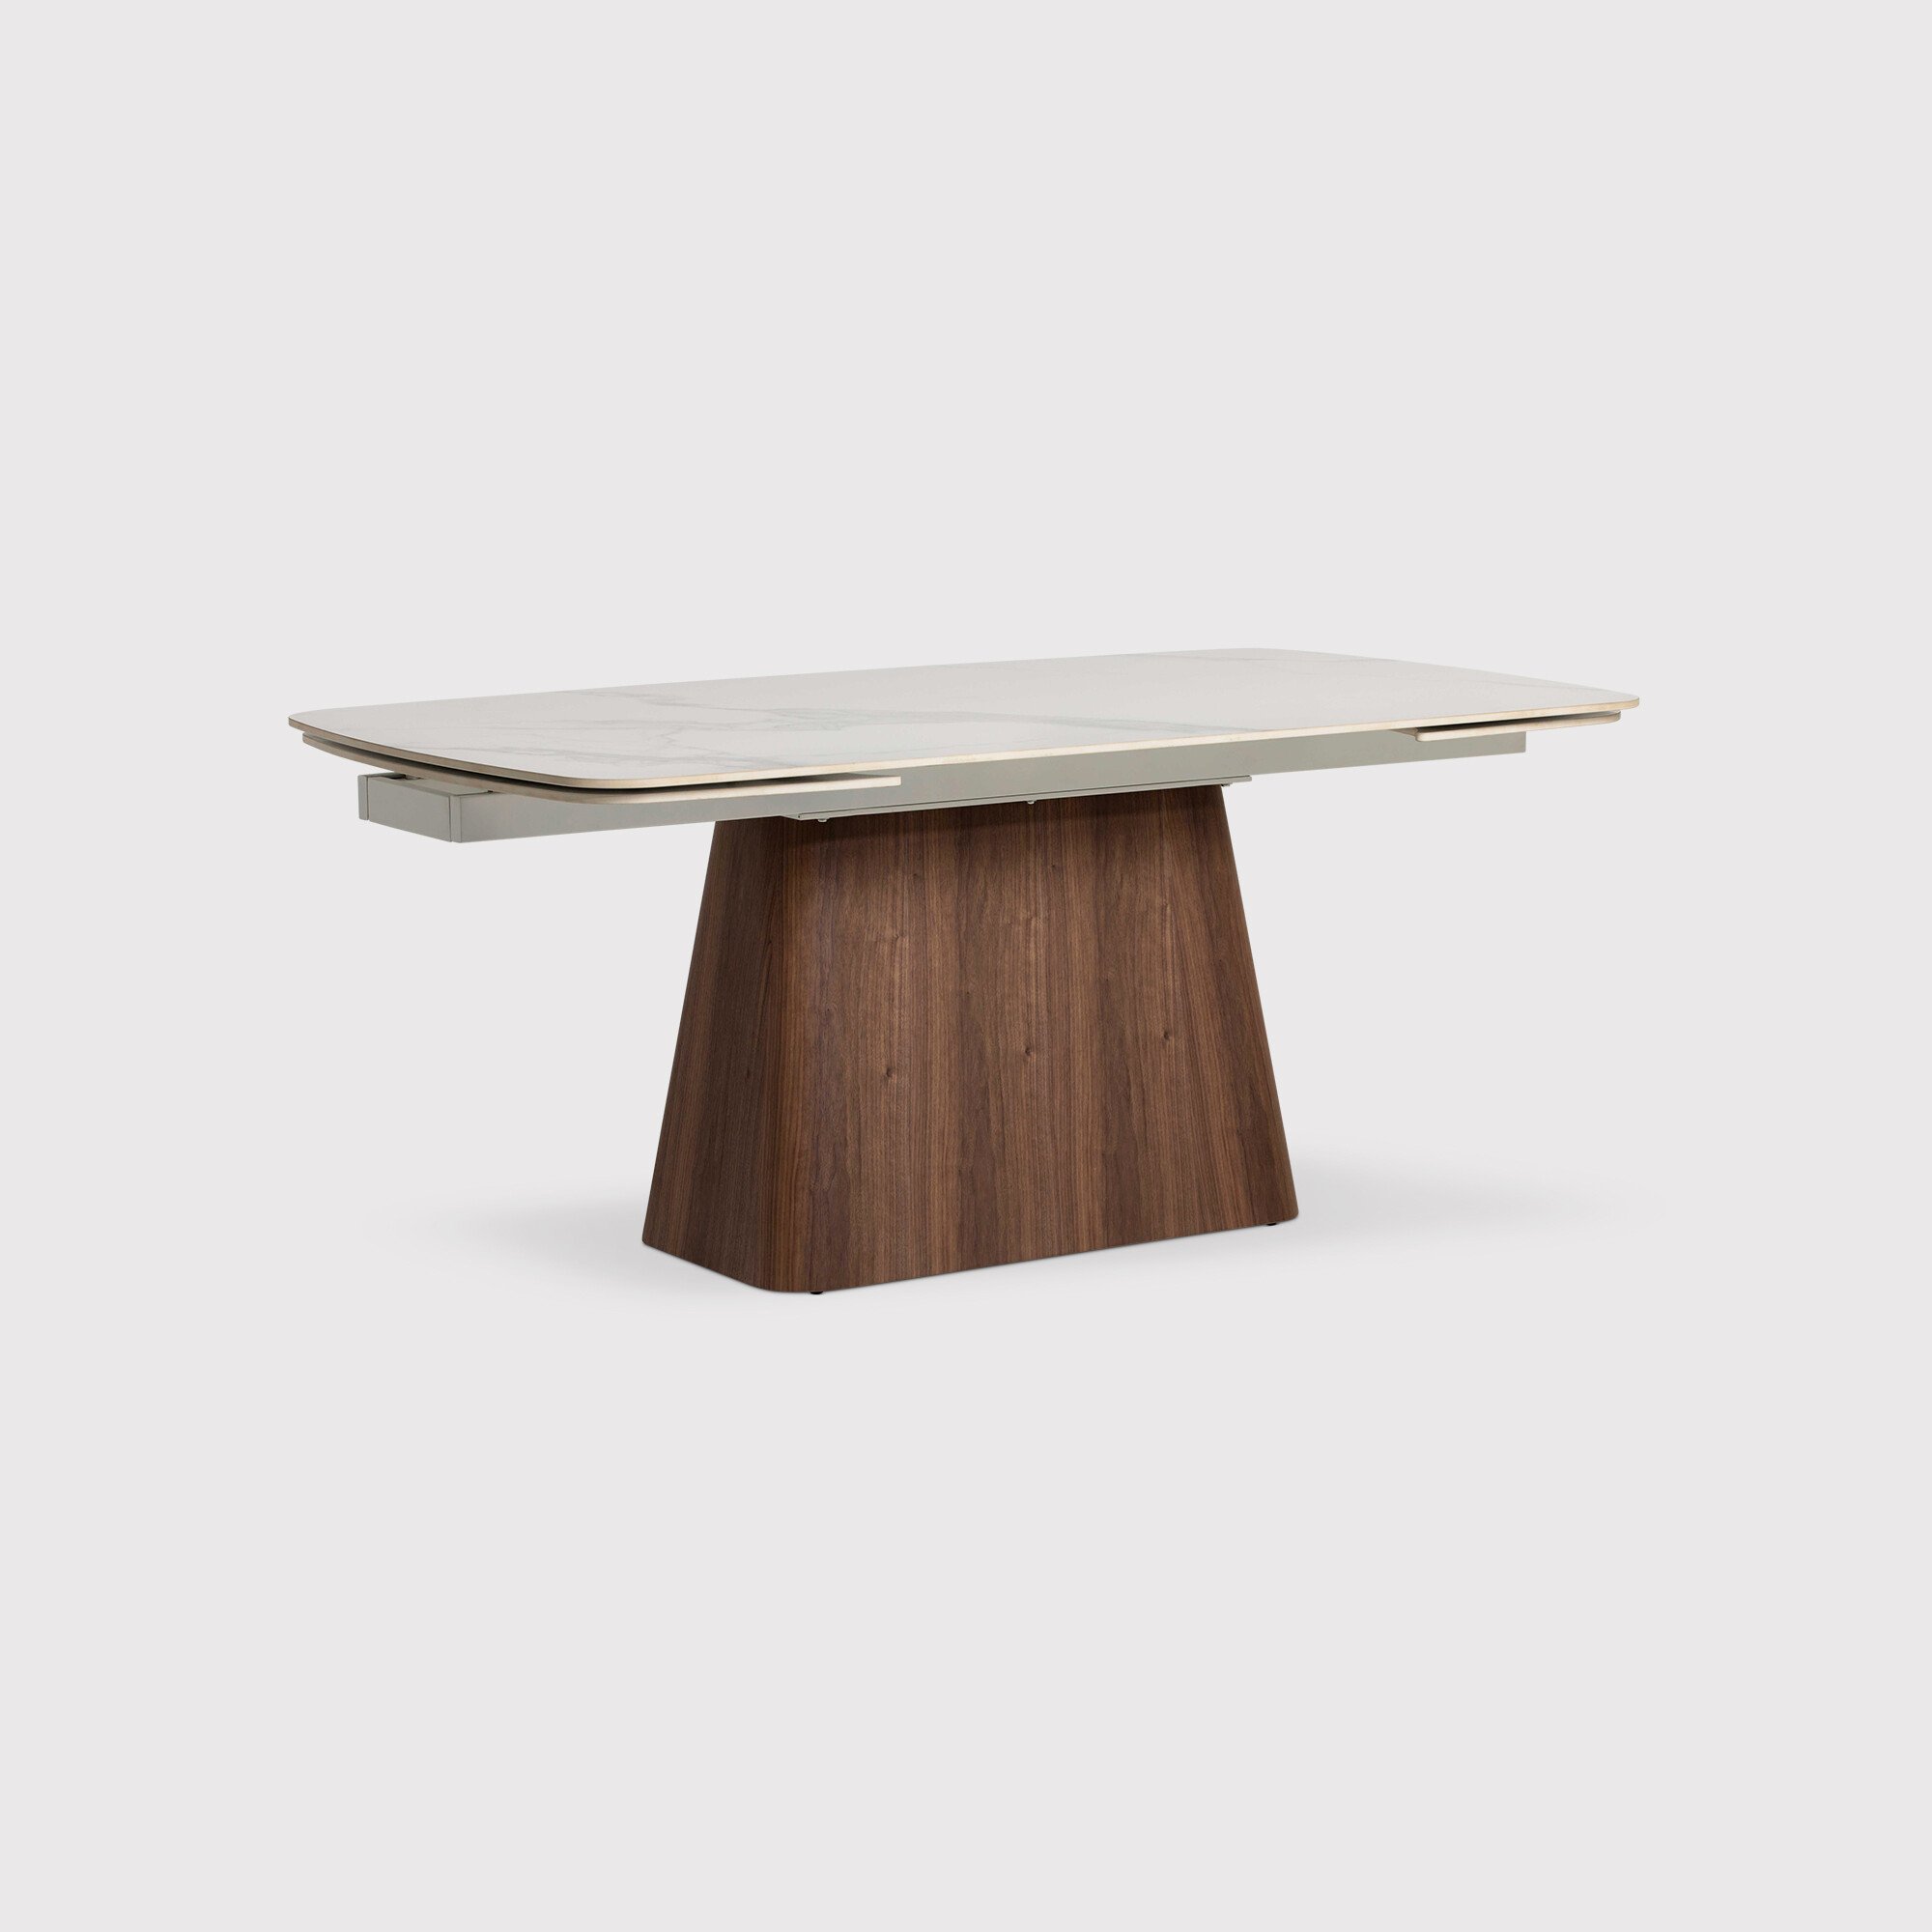 Morano 180cm Extending Dining Table, White Ceramic | Barker & Stonehouse